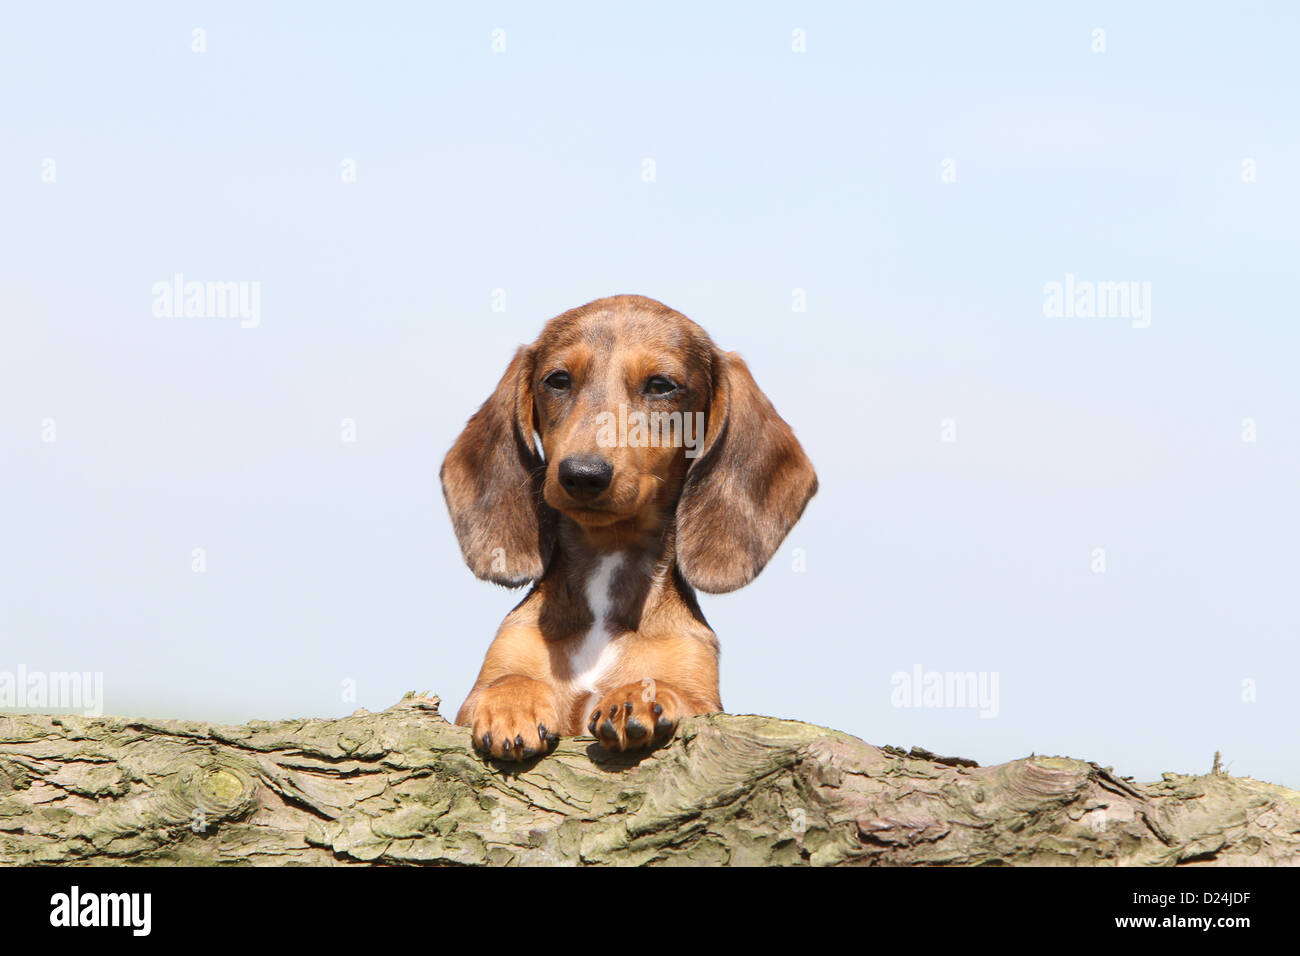 Dog Dachshund /  Dackel / Teckel  shorthaired puppy (Harlequin Merle brown) portrait Stock Photo